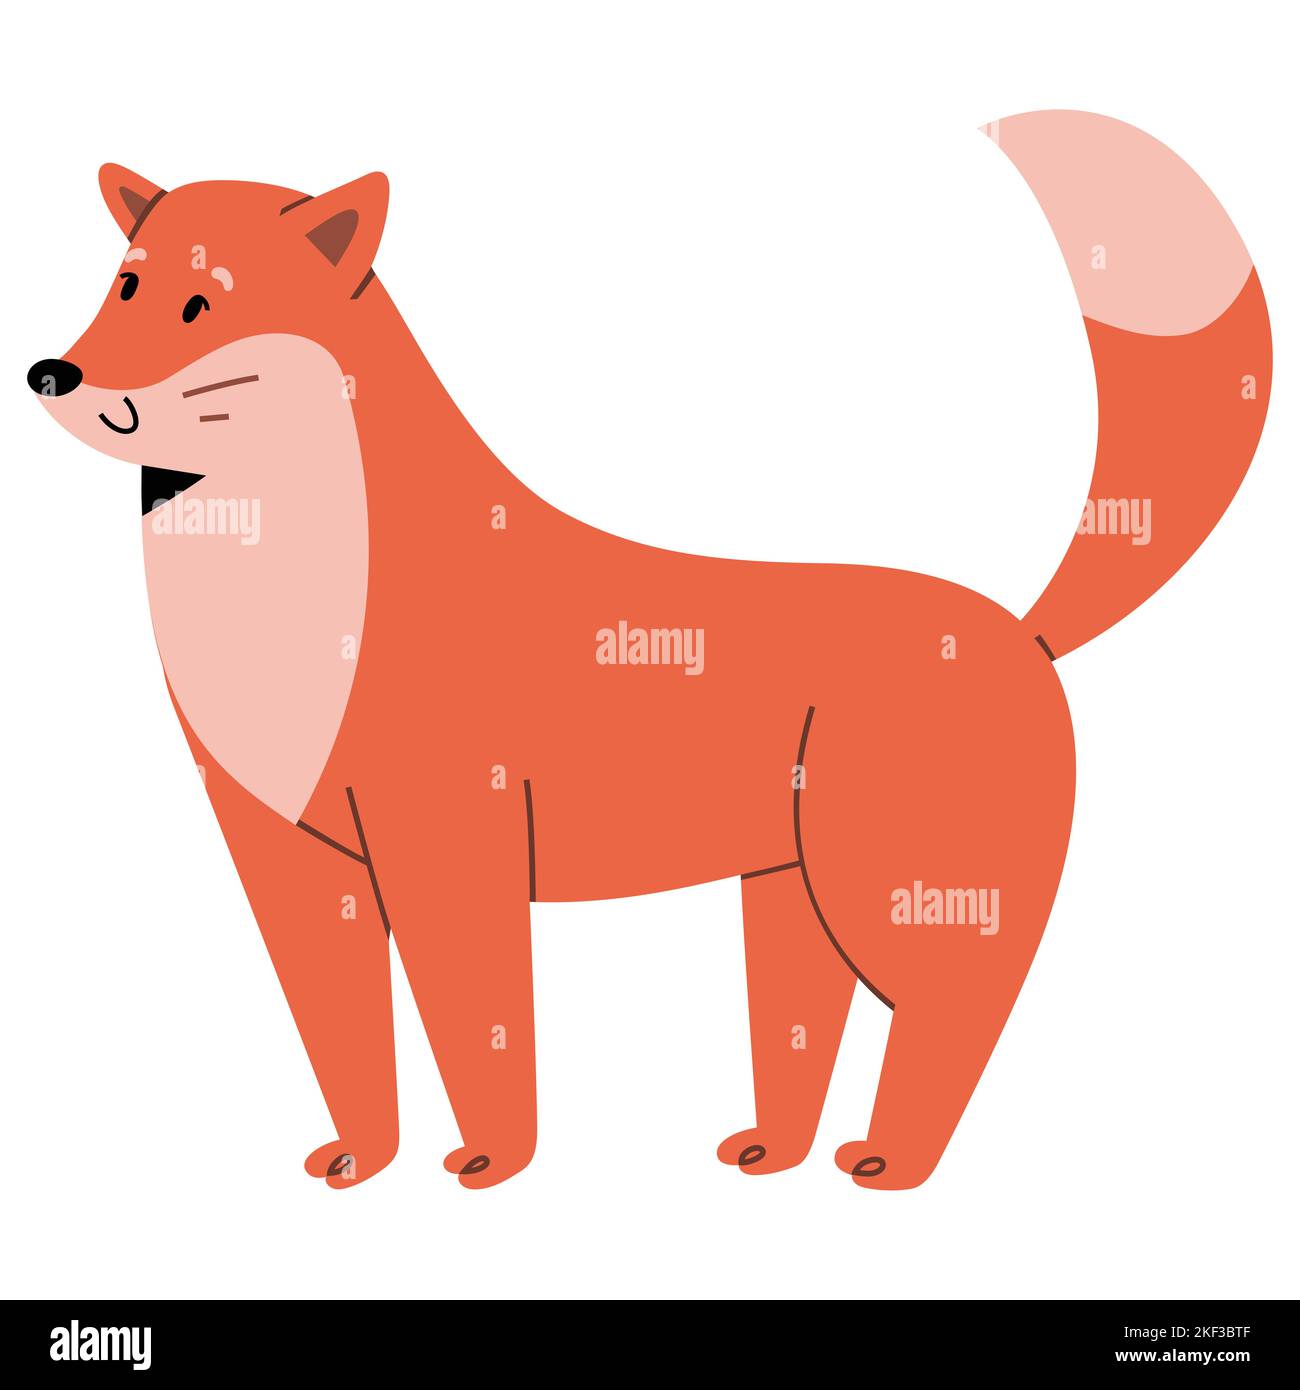 Adorable personnage de renard, animal de renard rouge debout et souriant avec l'expression amicale du visage Illustration de Vecteur